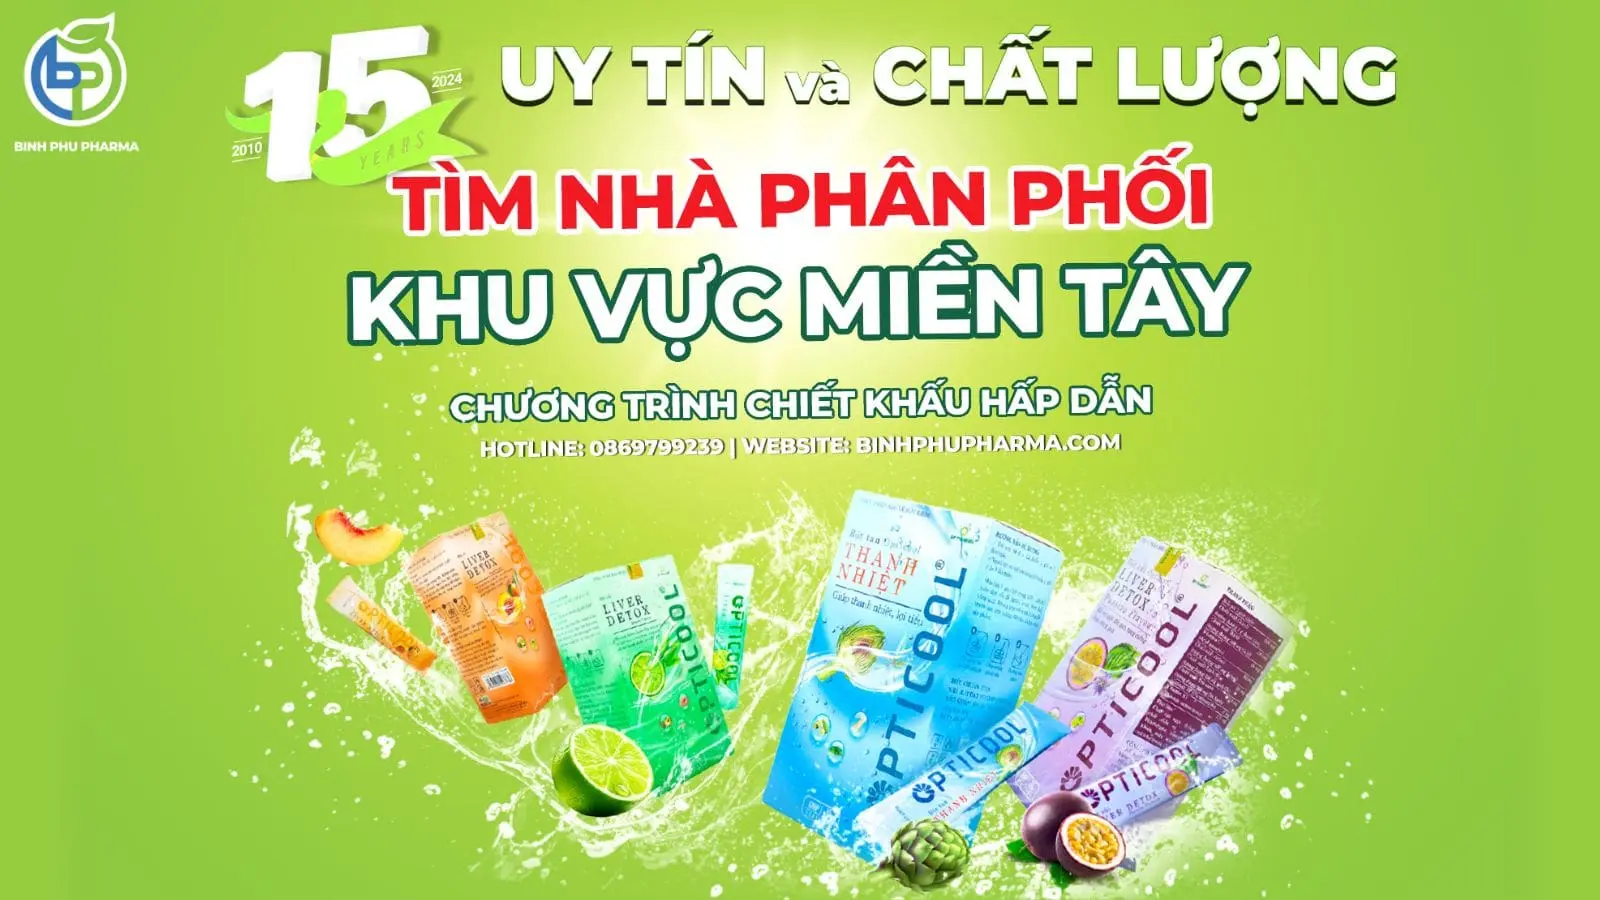 Feature image for post: TÌM NHÀ PHÂN PHỐI KHU VỰC MIỀN TÂY CHO THƯƠNG HIỆU SỦI THANH NHIỆT OPTICOOL